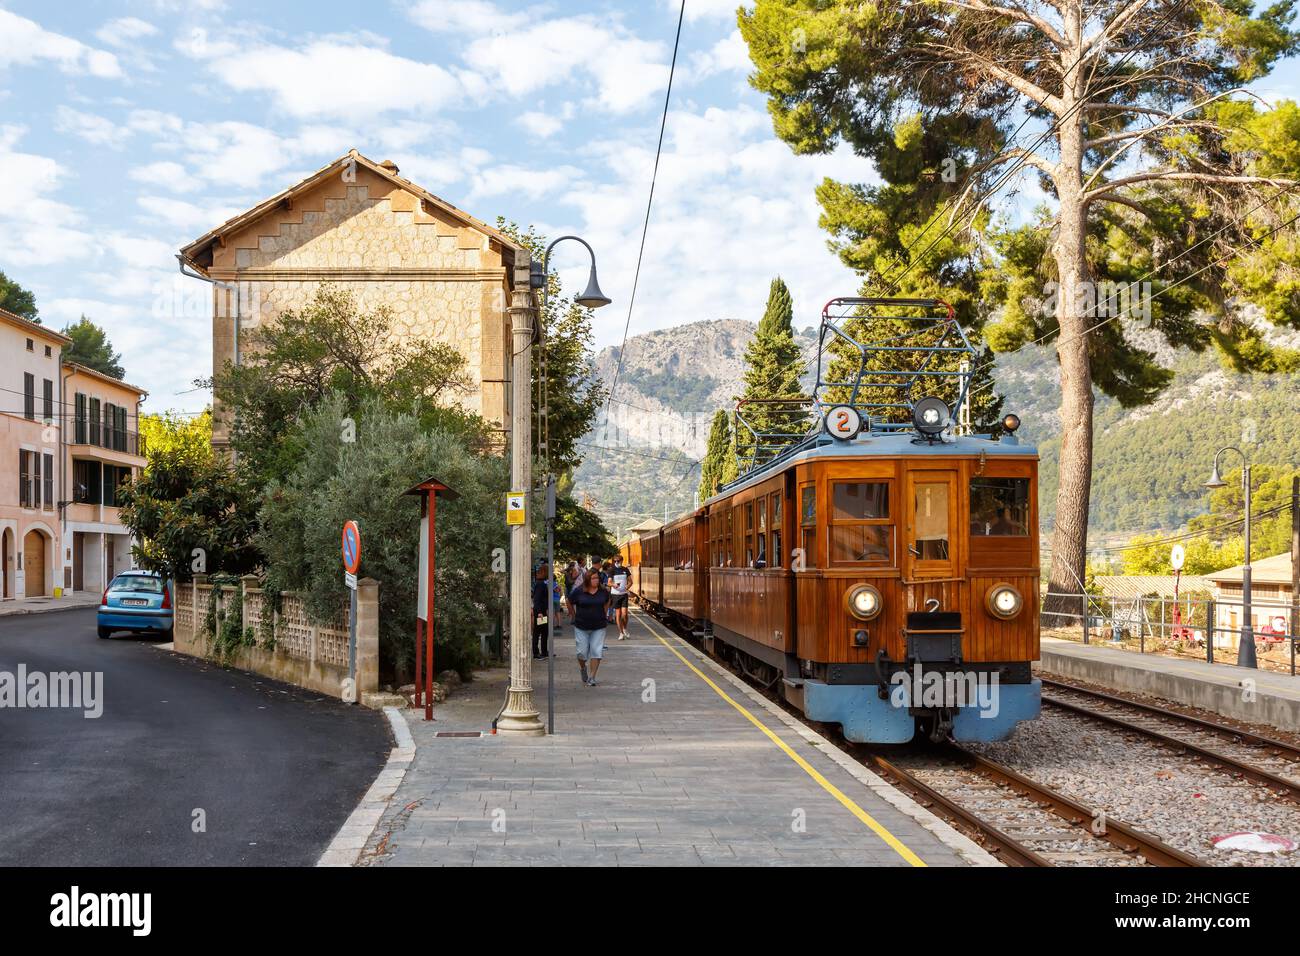 Bunyola, Spanien - 21. Oktober 2021: Alter Zug Tren de Soller öffentlicher Nahverkehr am Bahnhof Bunyola auf Mallorca in Spai Stockfoto